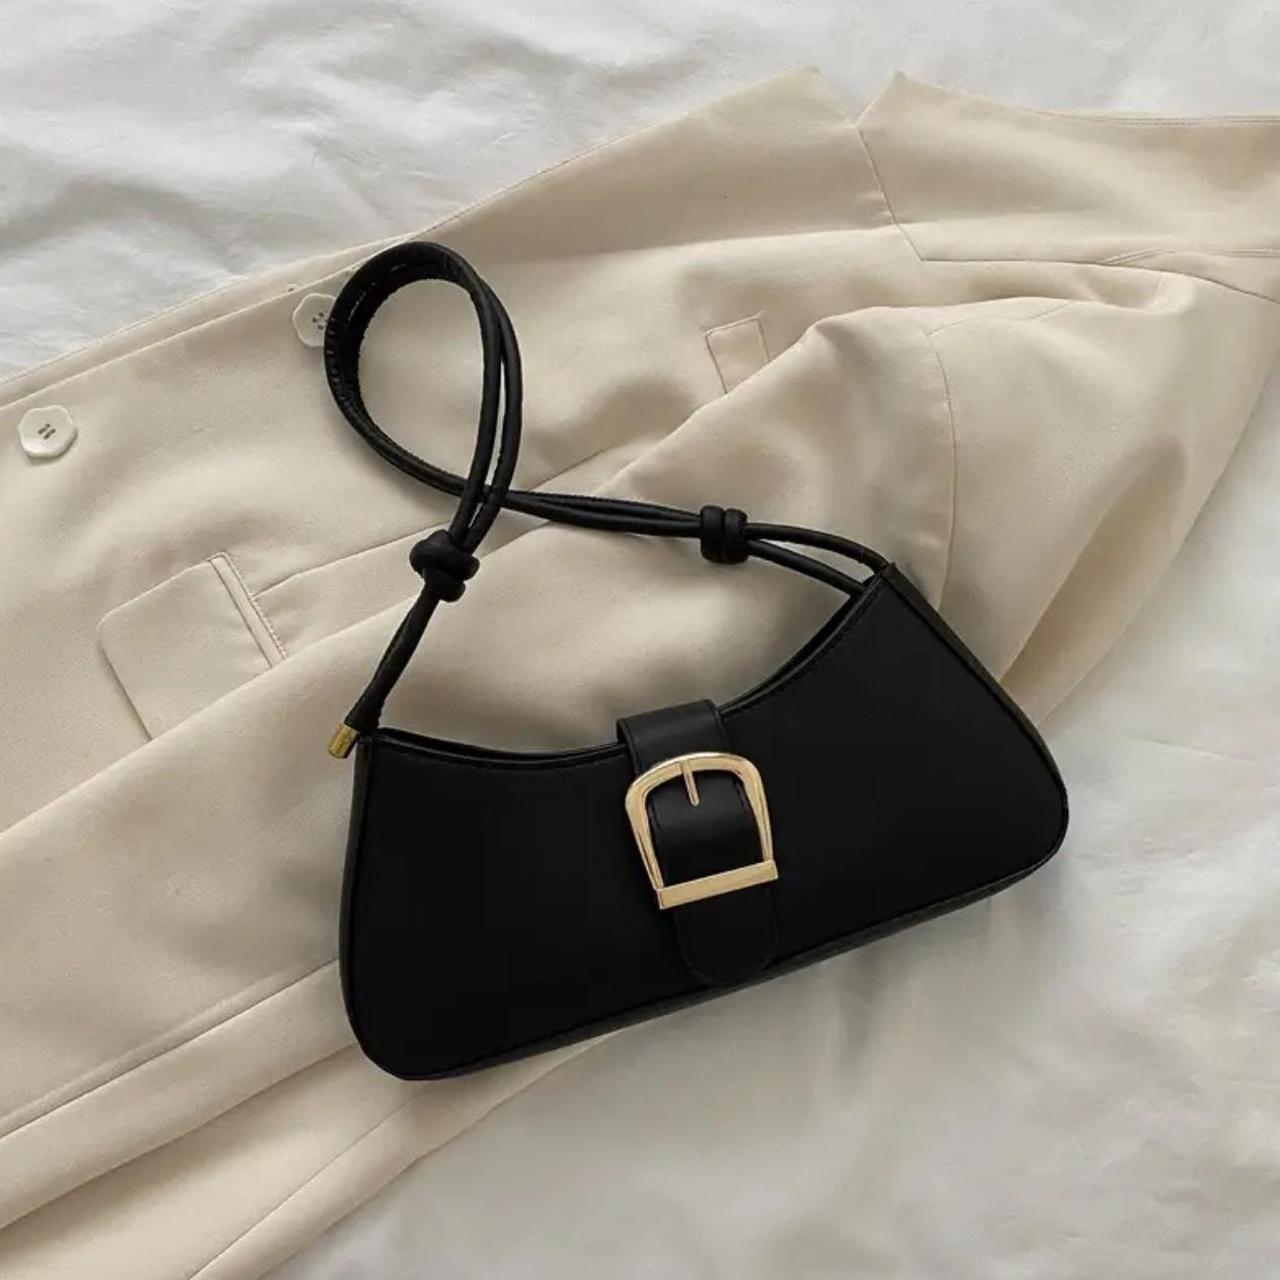 Black shoulder bag with gold buckle and a black... - Depop